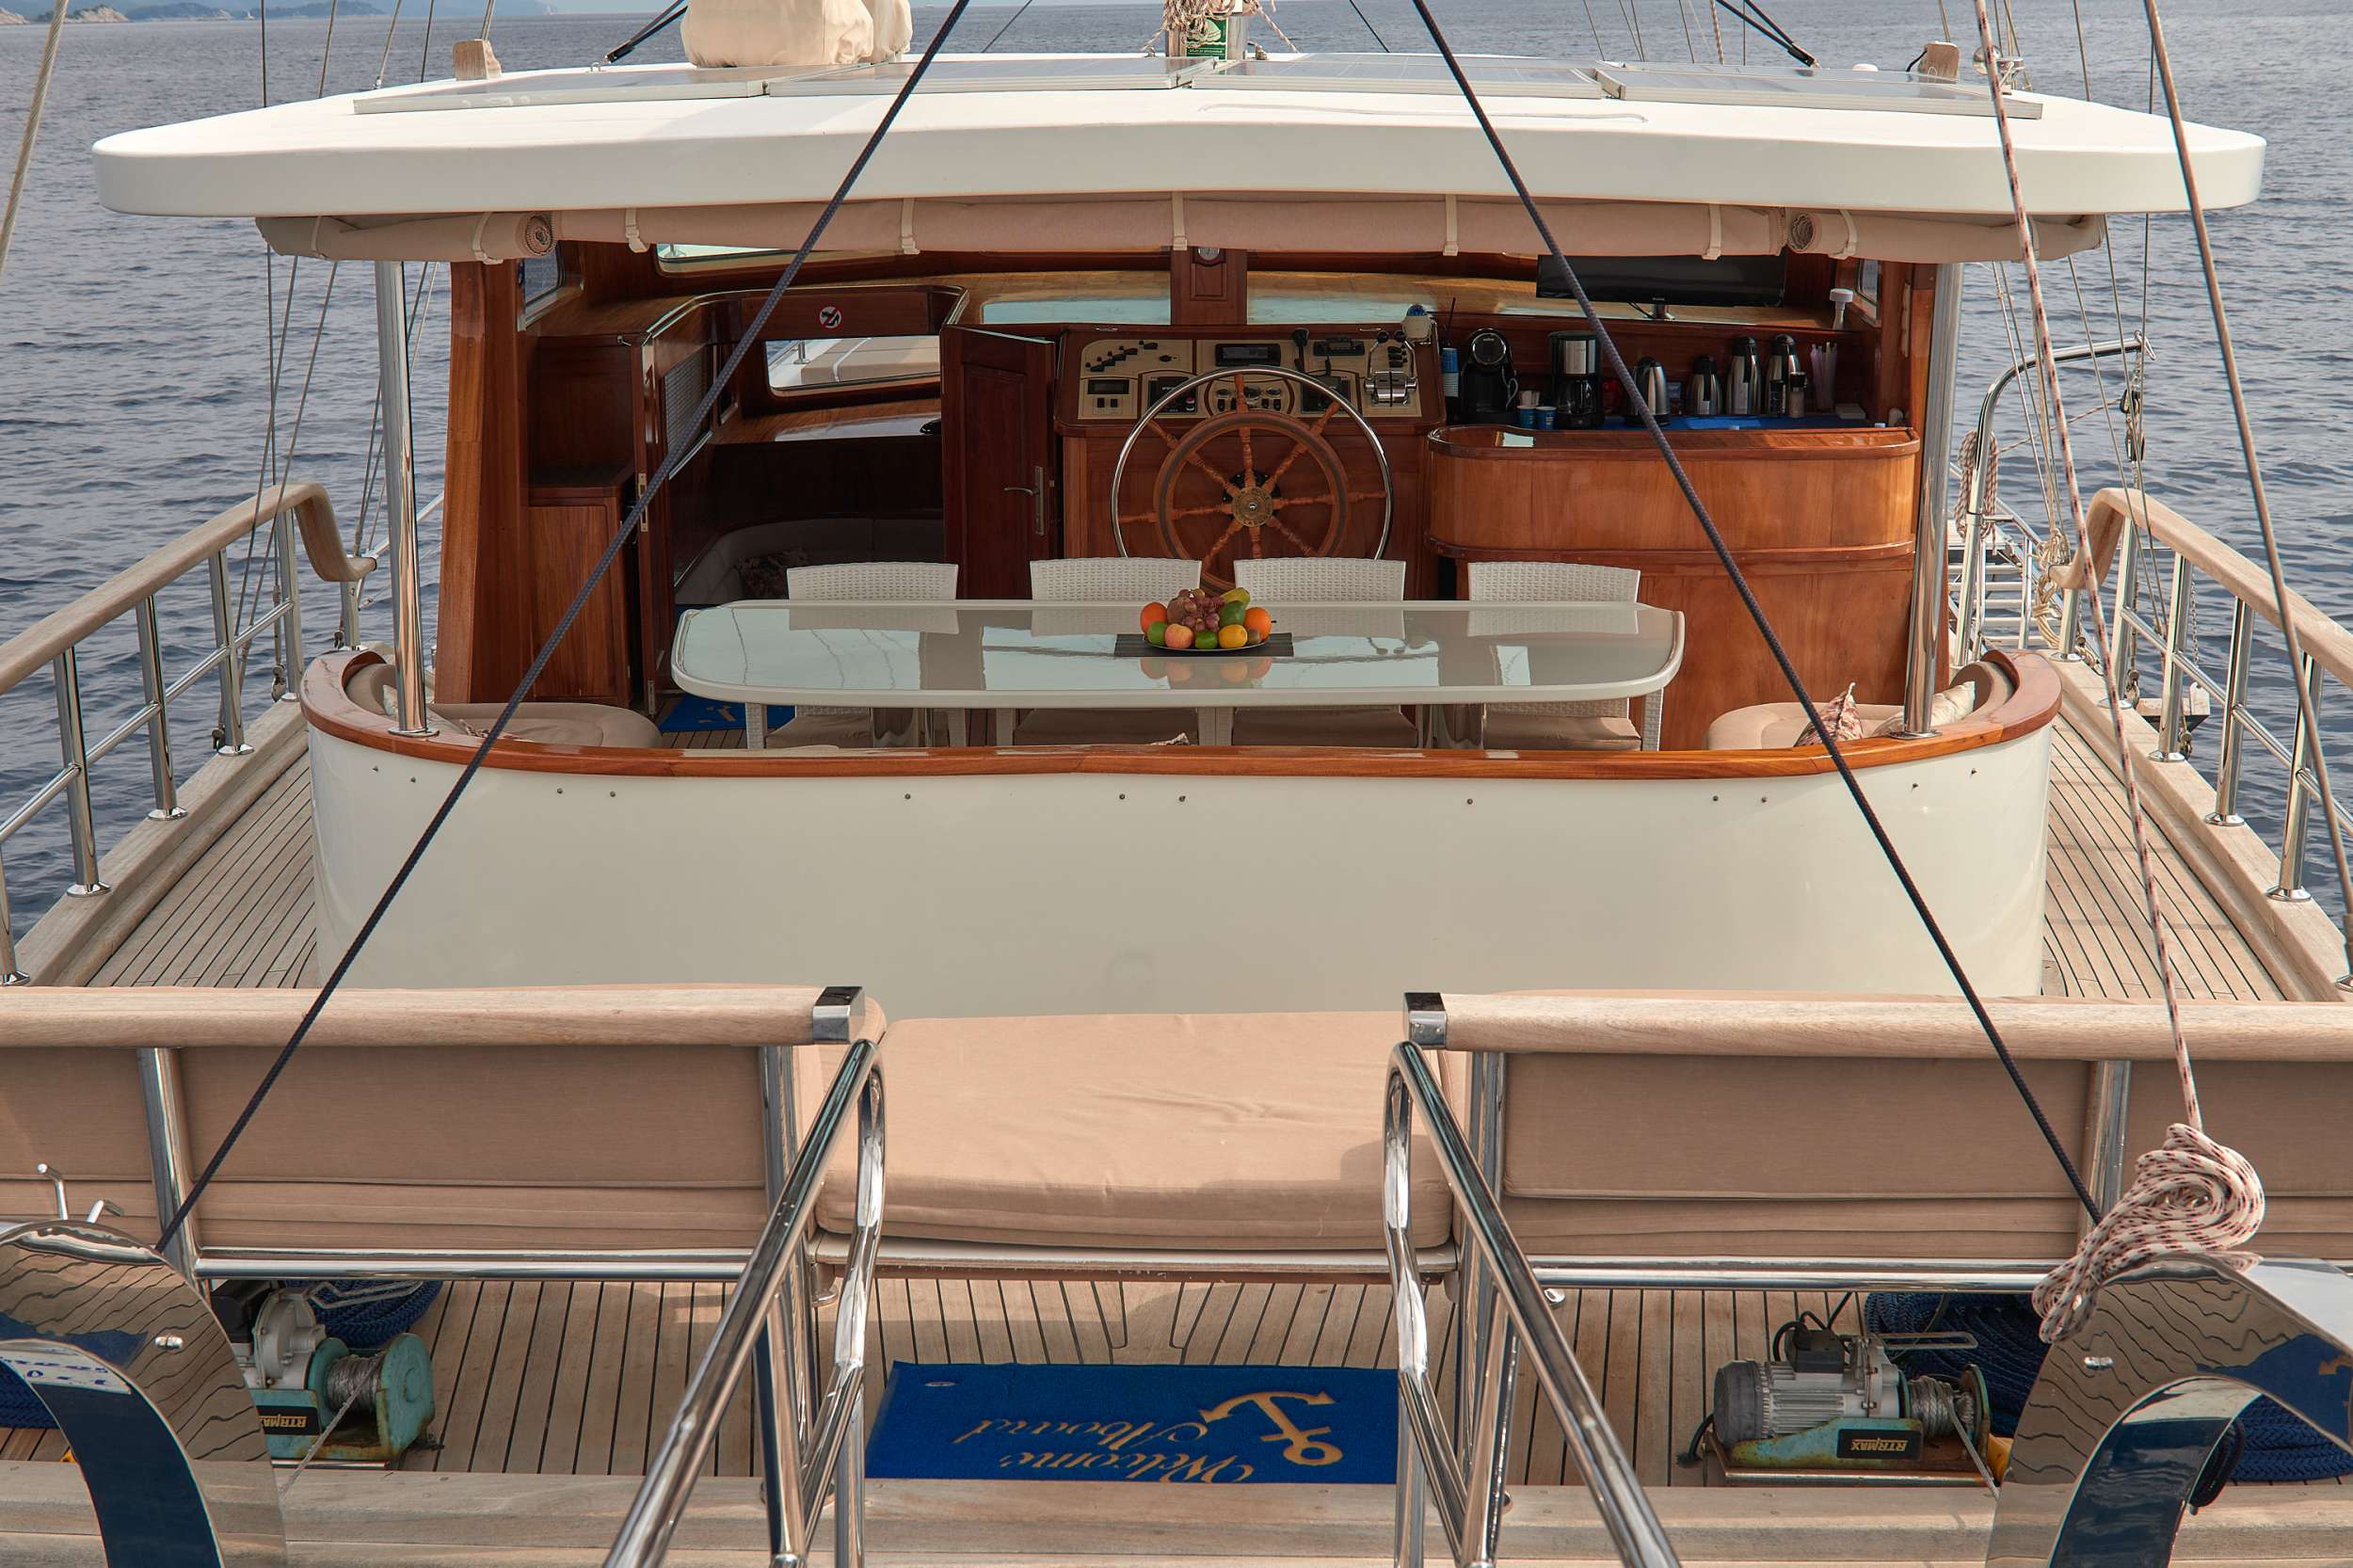 SEA BREEZE - Yacht Charter Rijeka & Boat hire in Croatia 4